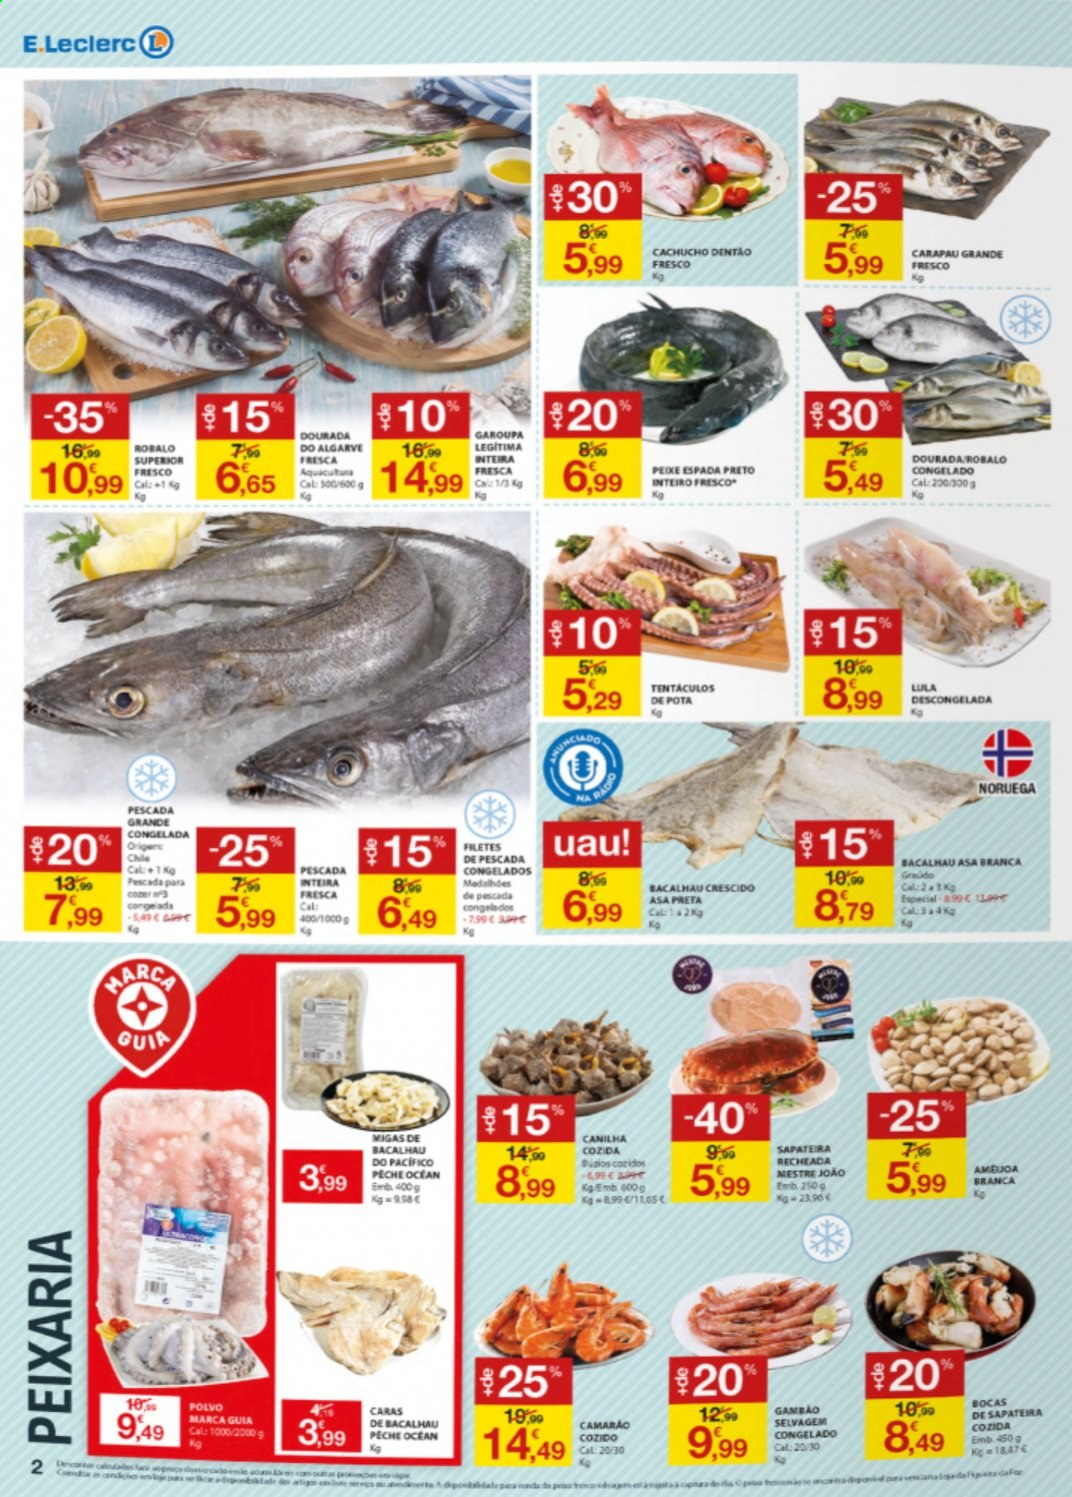 thumbnail - Folheto E.Leclerc - 17.6.2021 - 23.6.2021 - Produtos em promoção - garoupa, camarão, bacalhau, polvo, peixe espada, peixe, lula. Página 2.